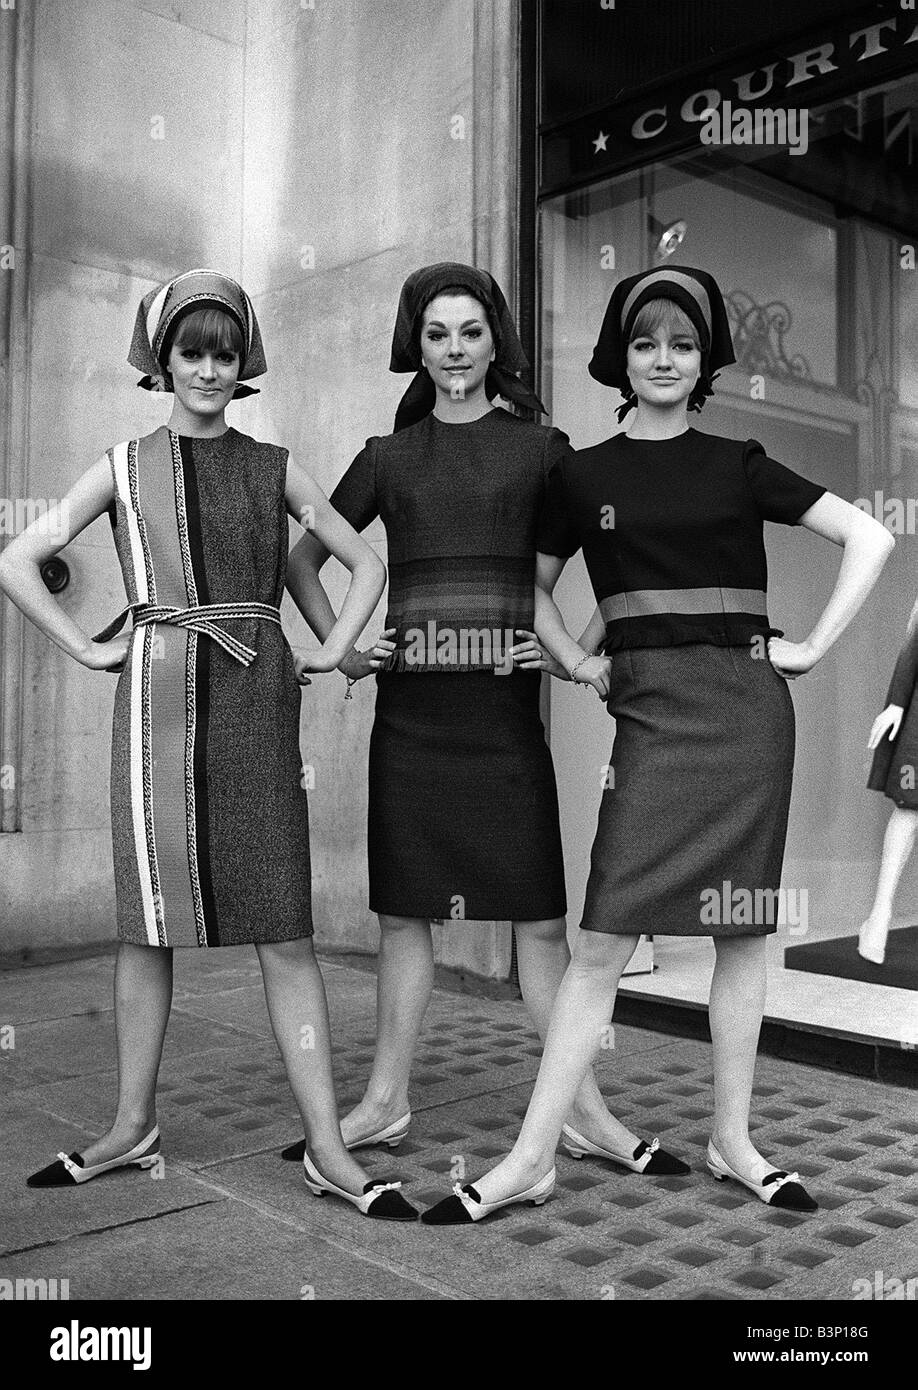 Mode, die während der London Fashion Woche 1964 drei Frauen mit Kopftuch  Stil Hüte stehen mit ihren Händen auf ihren Hüften suchen trotzig  gestreiften Kleider tragen Stockfotografie - Alamy